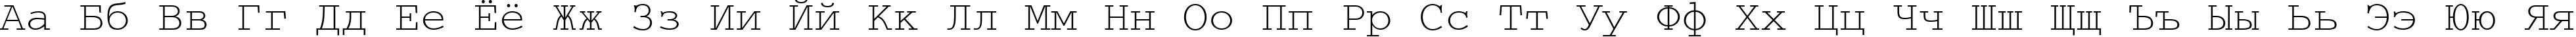 Пример написания русского алфавита шрифтом CourierCyrillic